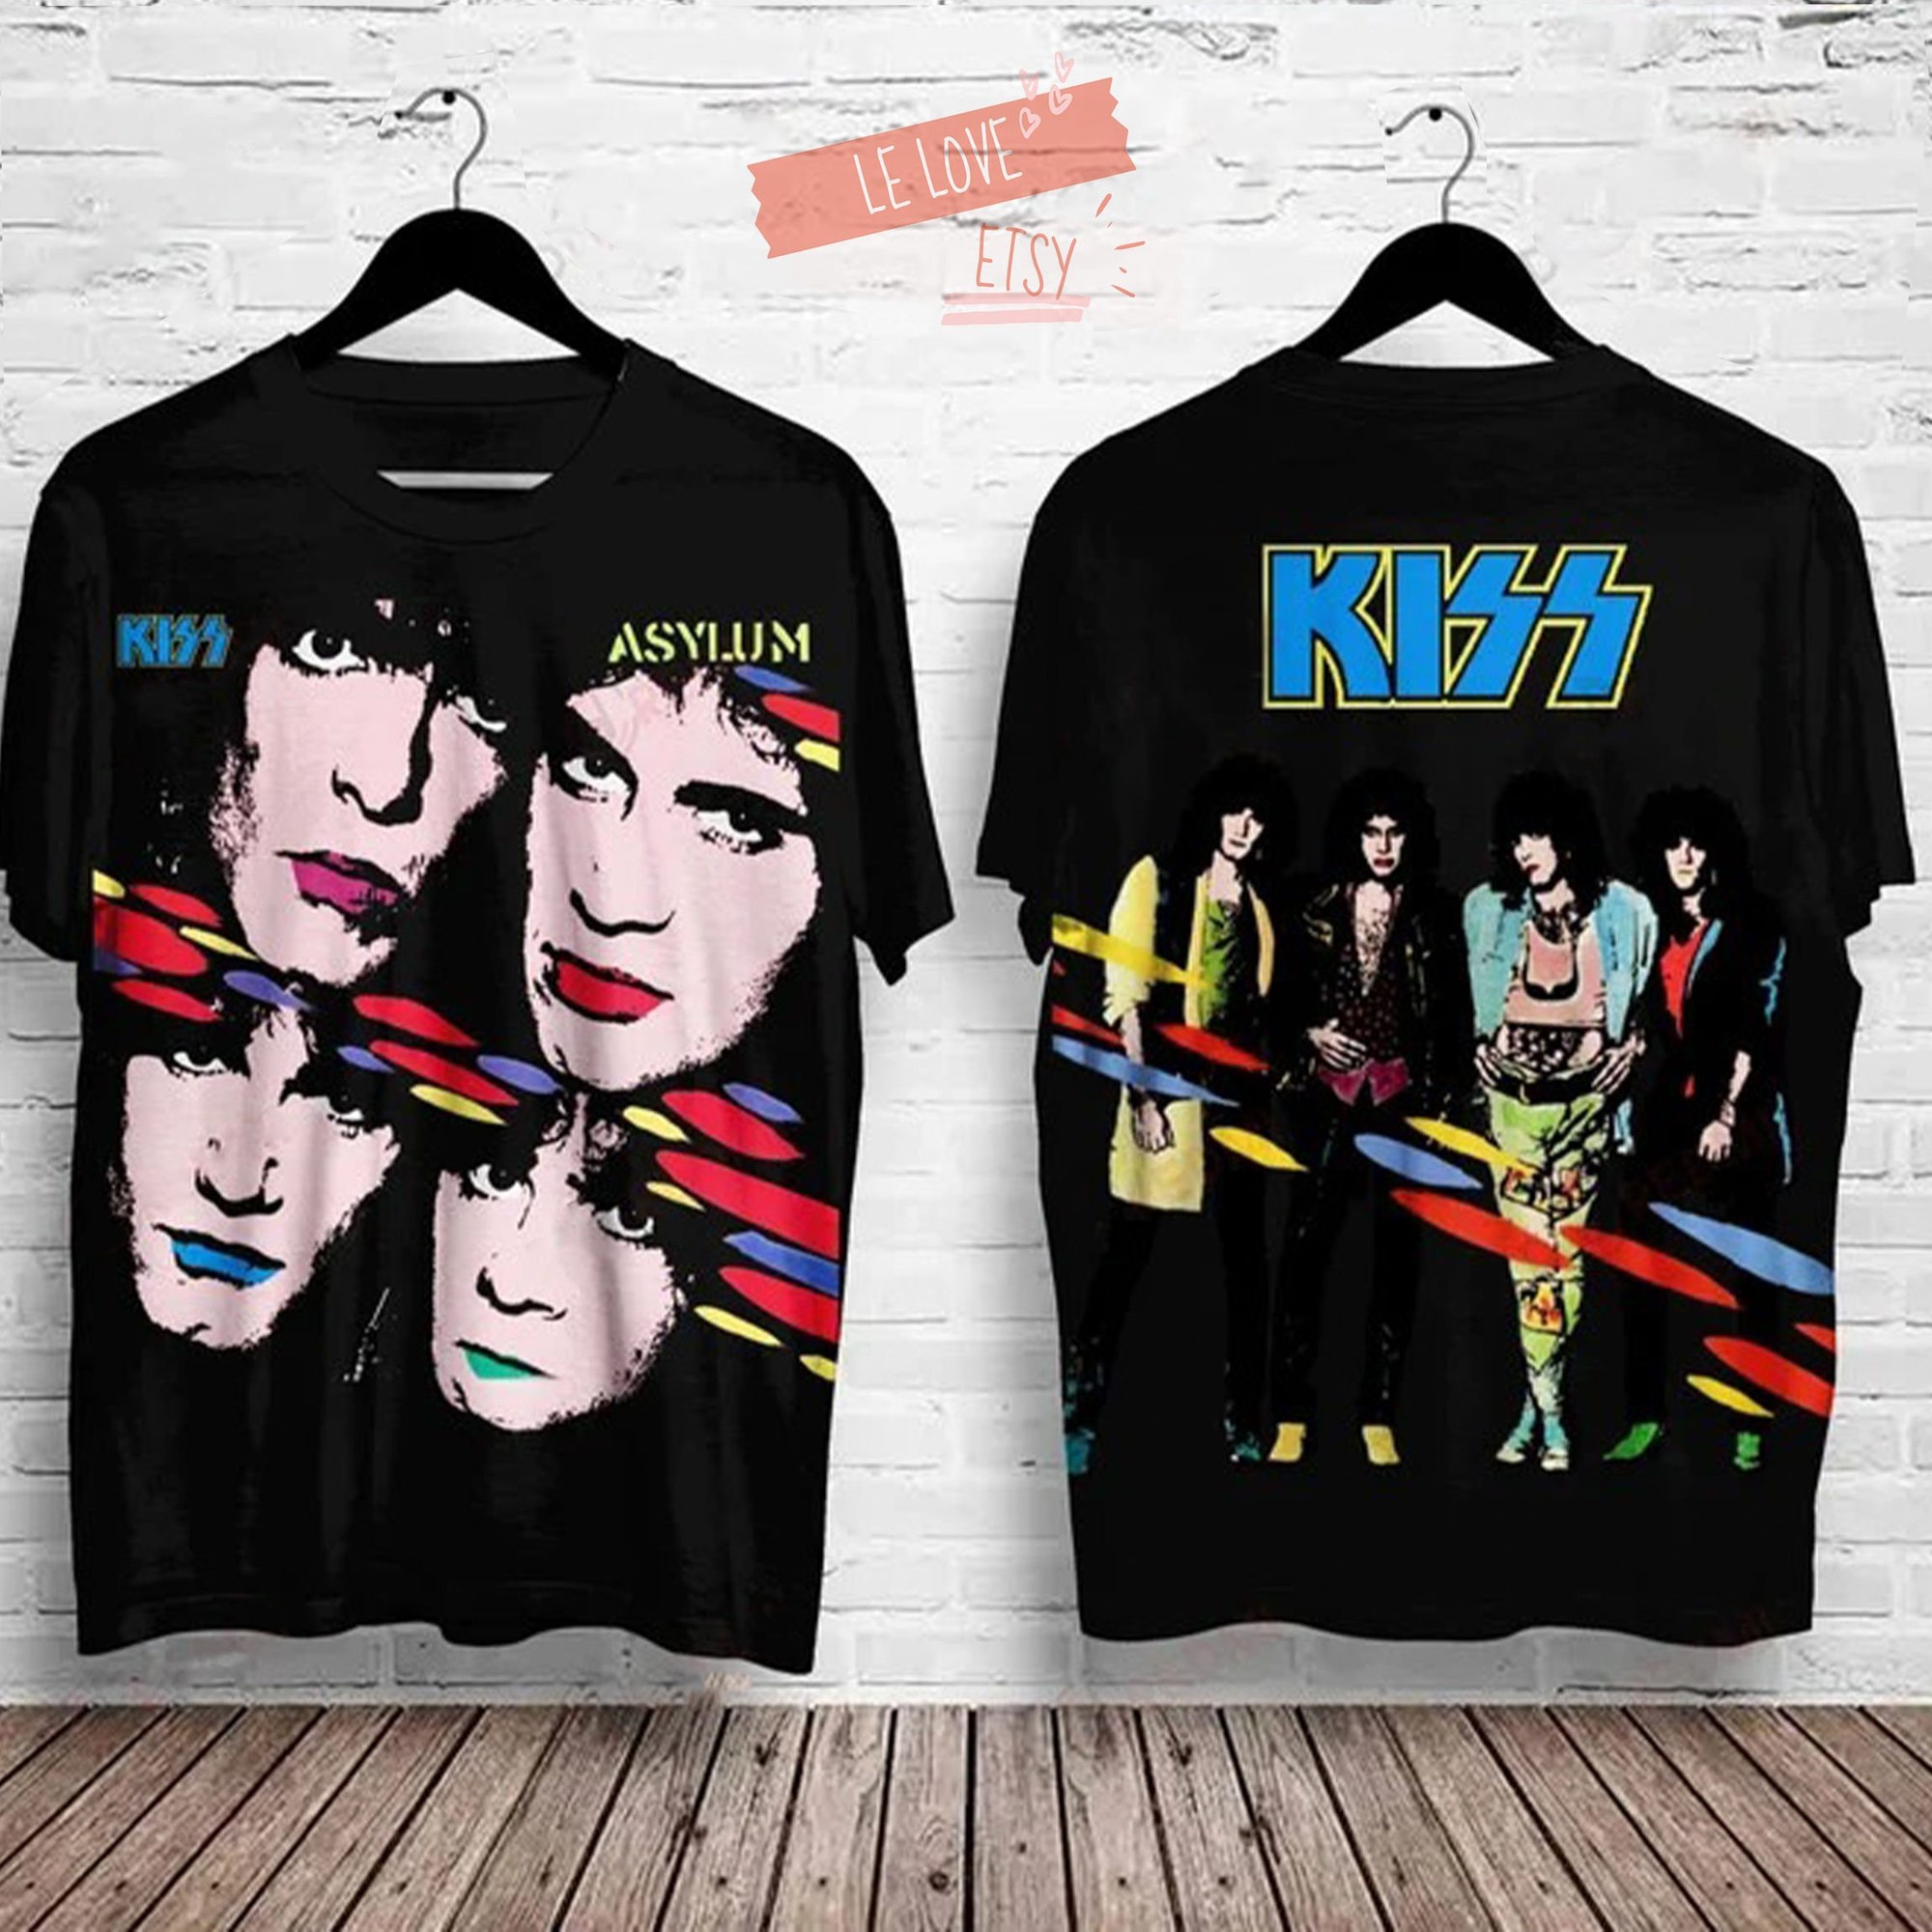 Kizz Asylum Shirt 3D, Rock Band Shirt 3D